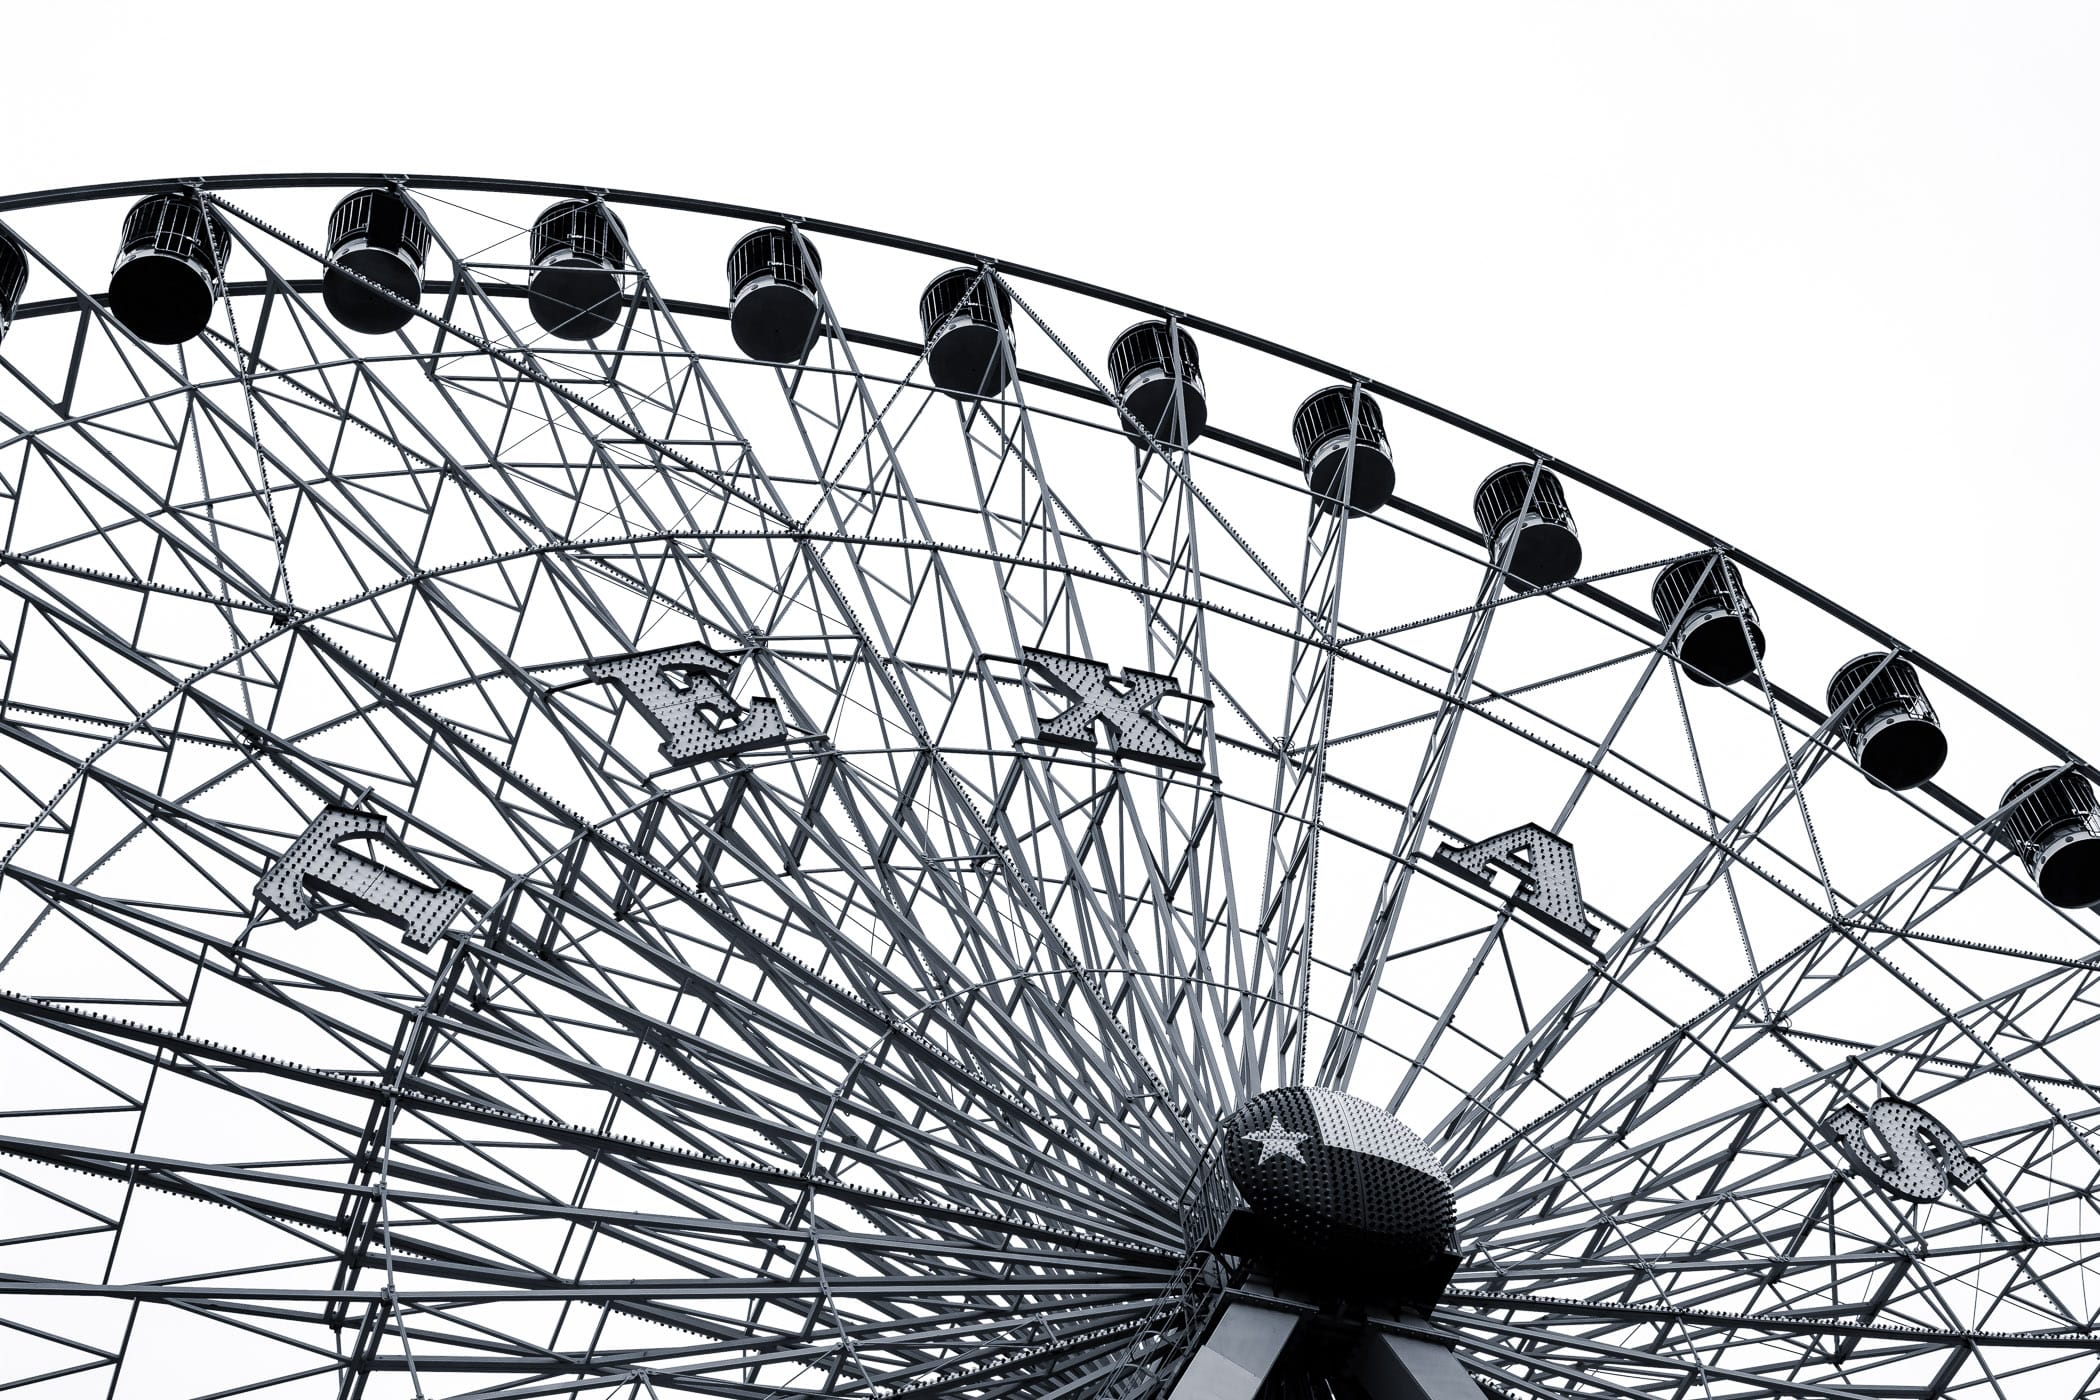 Intricate detail of the Texas Star Ferris Wheel at Dallas' Fair Park.